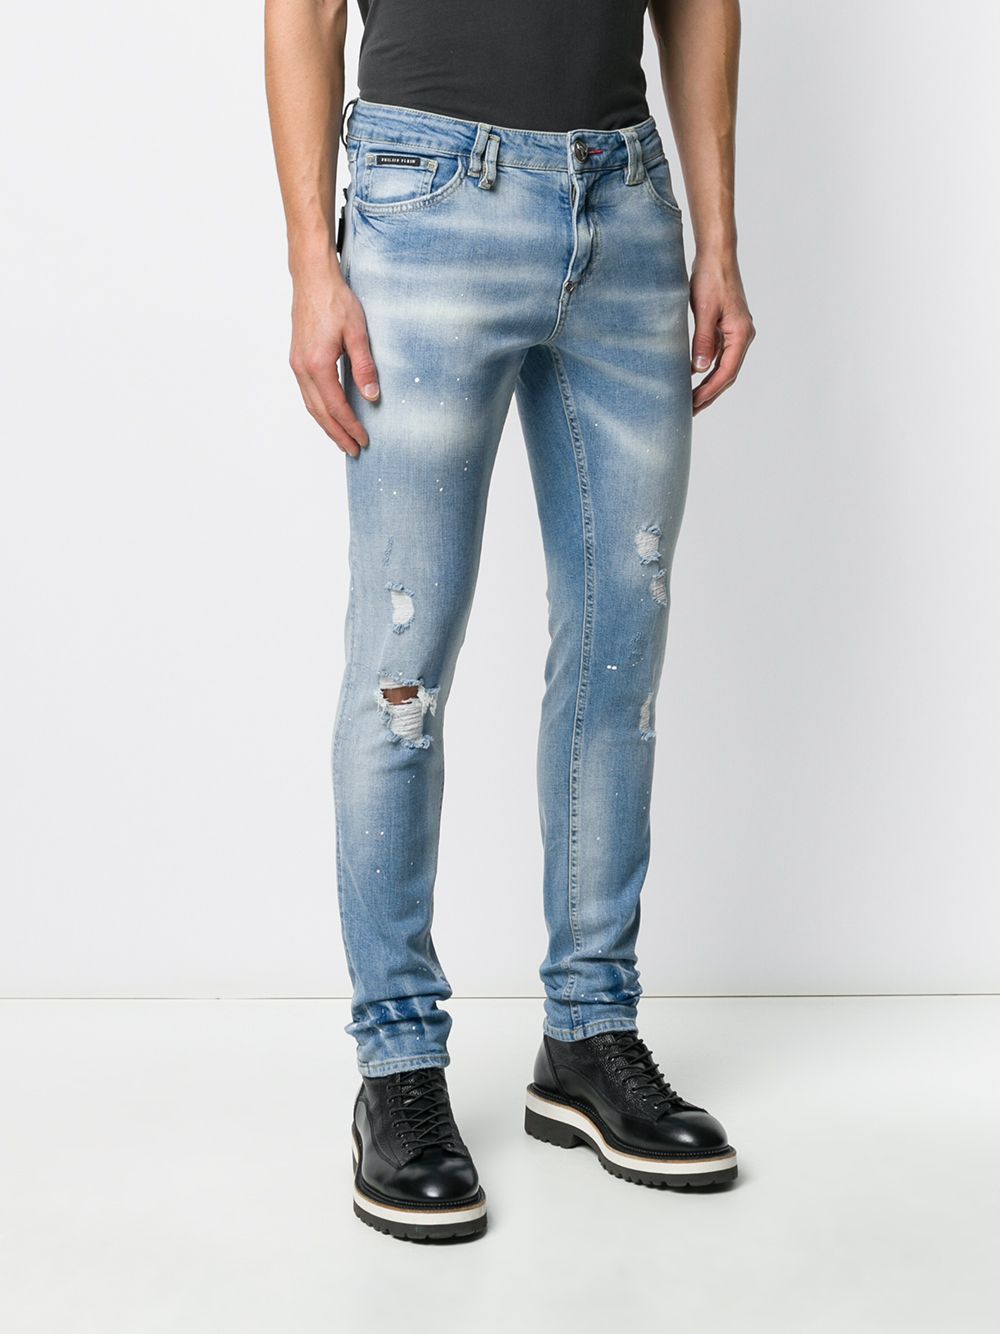 фото Philipp plein джинсы кроя слим с прорезями